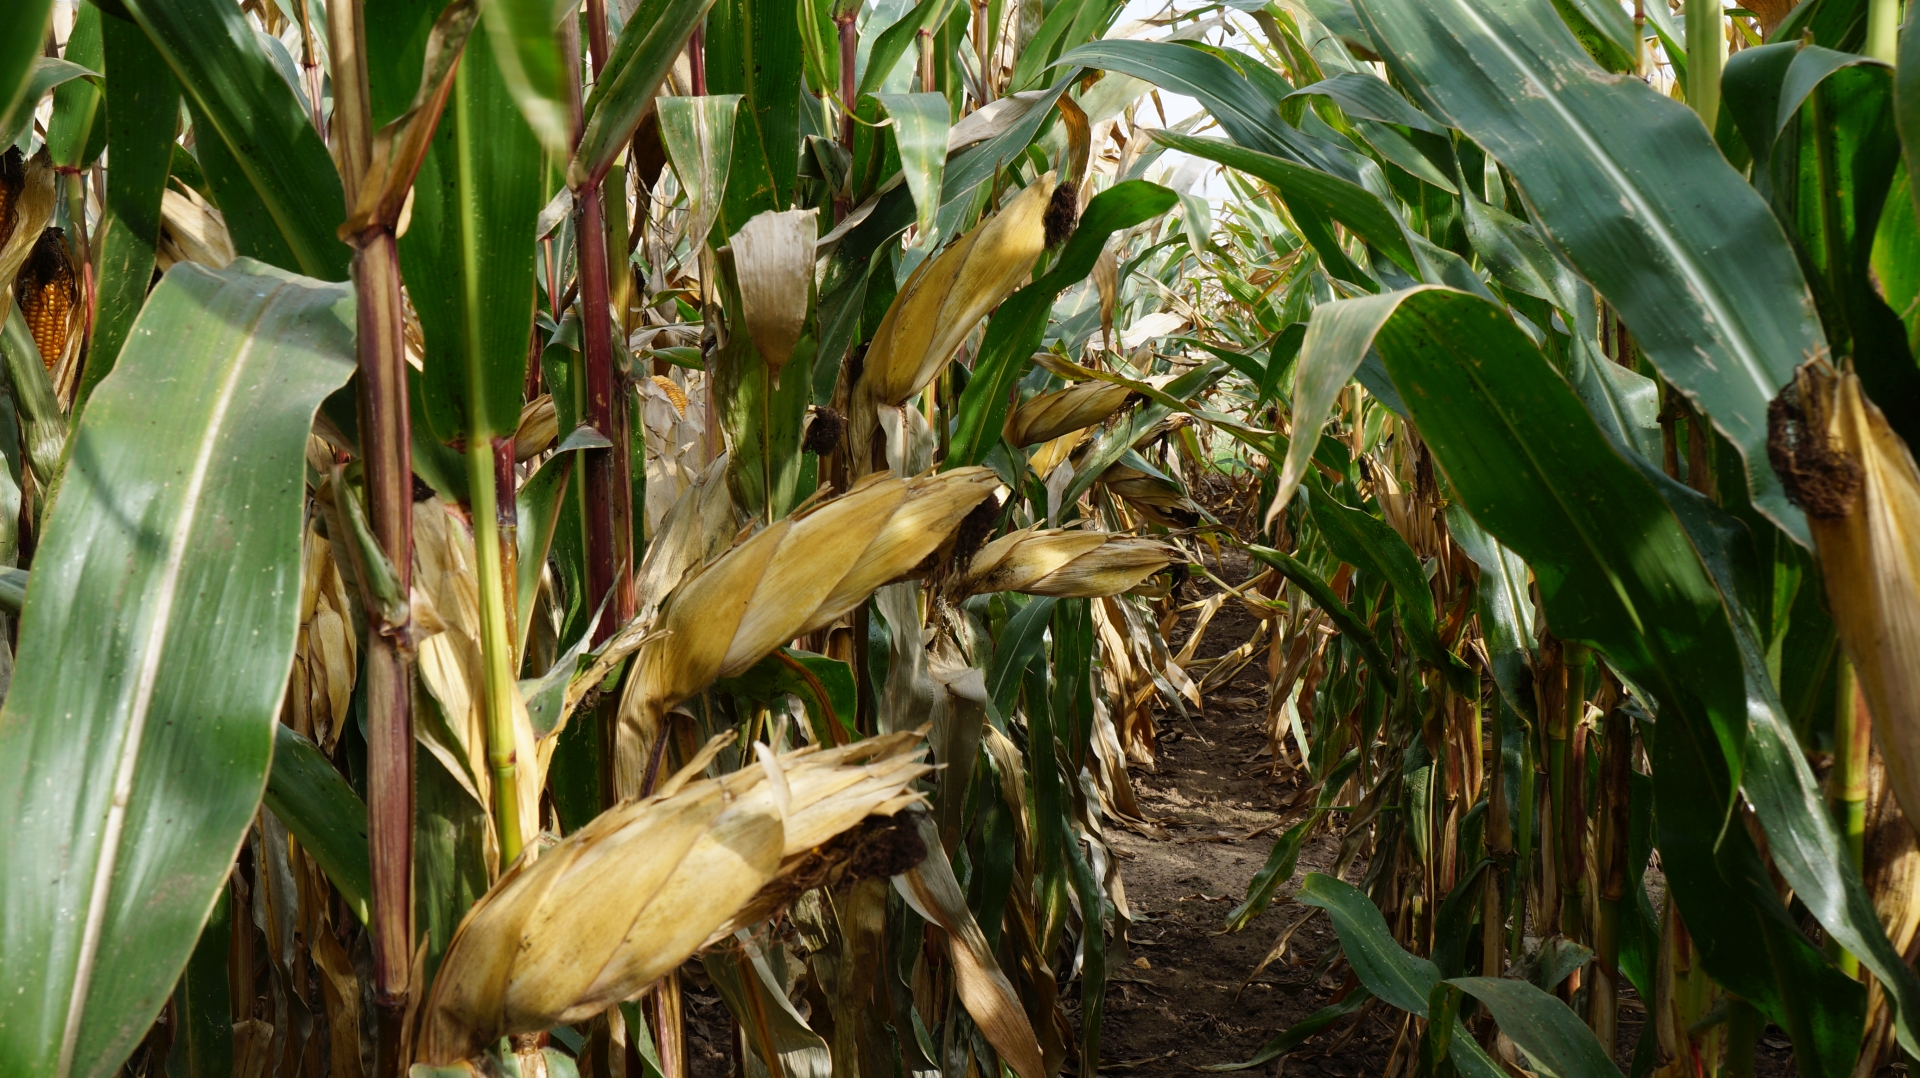 Poznaj skuteczne metody leczenia i zapobiegania niedoborowi manganu w kukurydzy. Dowiedz się, jak rozpoznawać symptomy, stosować nawozy nalistne i zarządzać glebą, aby zapewnić roślinom zdrowy rozwój i wyższe plony.